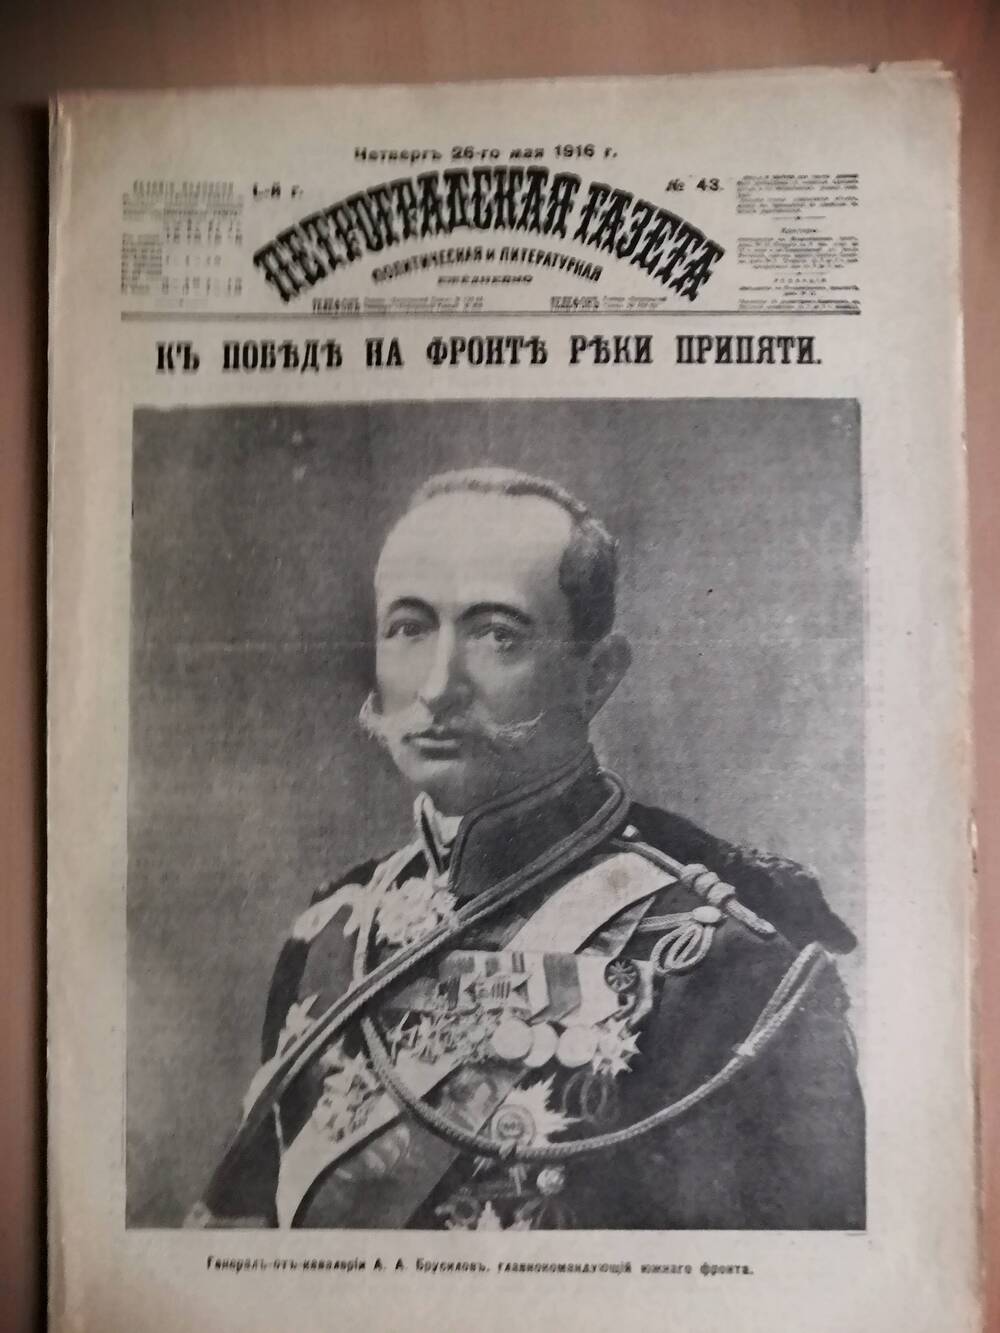 Петроградская газета, политическая и литературная №43, от четверга 26-го мая 1916 г.